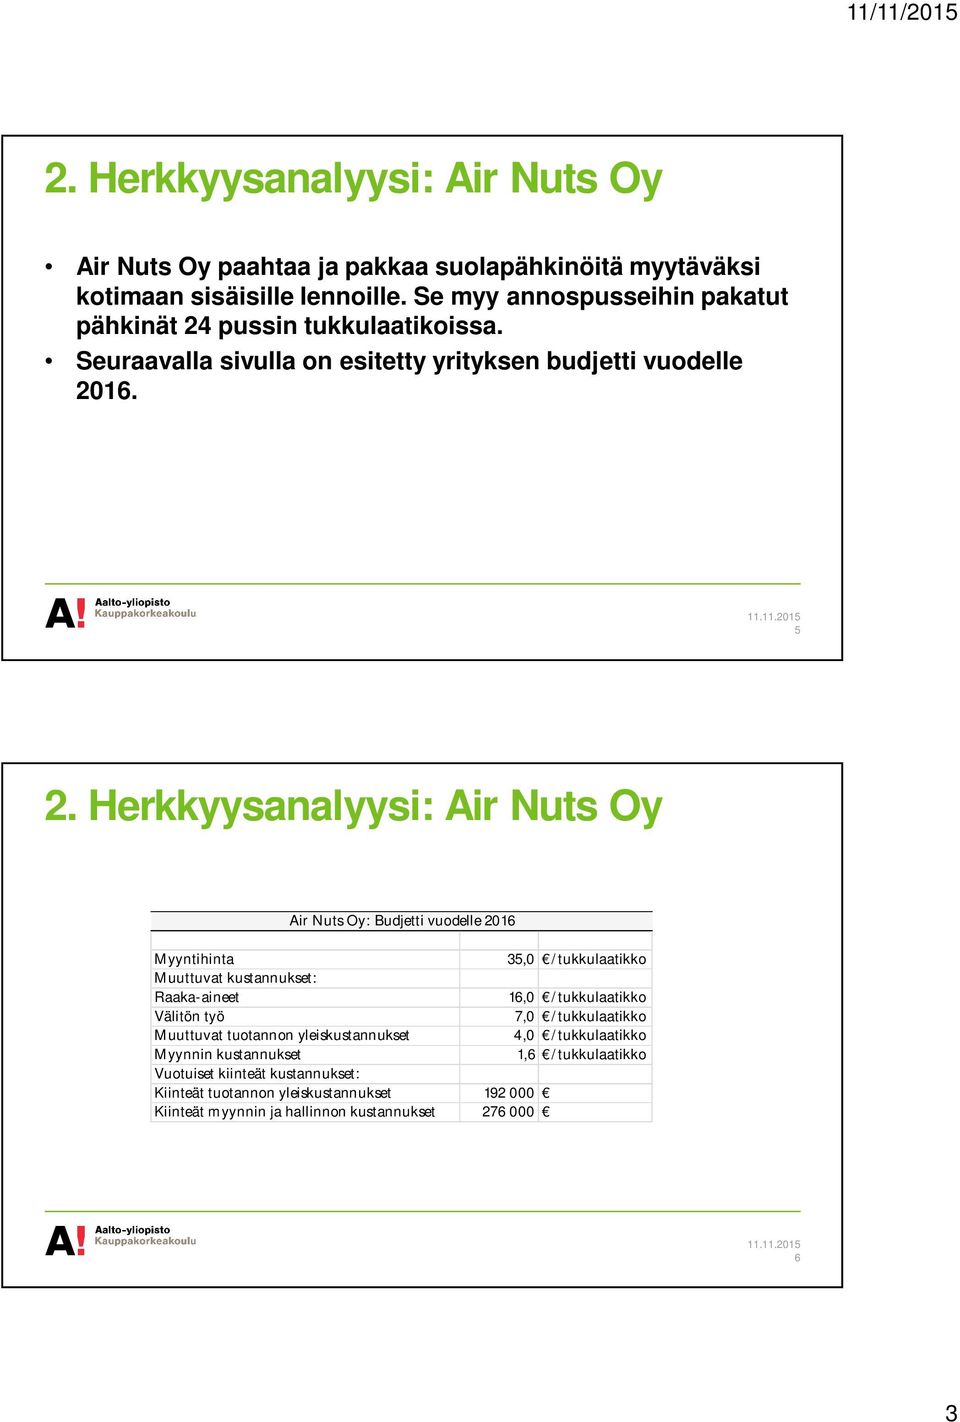 Herkkyysanalyysi: Air Nuts Oy Air Nuts Oy: Budjetti vuodelle 2016 Myyntihinta 35,0 /tukkulaatikko Muuttuvat kustannukset: Raaka-aineet 16,0 /tukkulaatikko Välitön työ